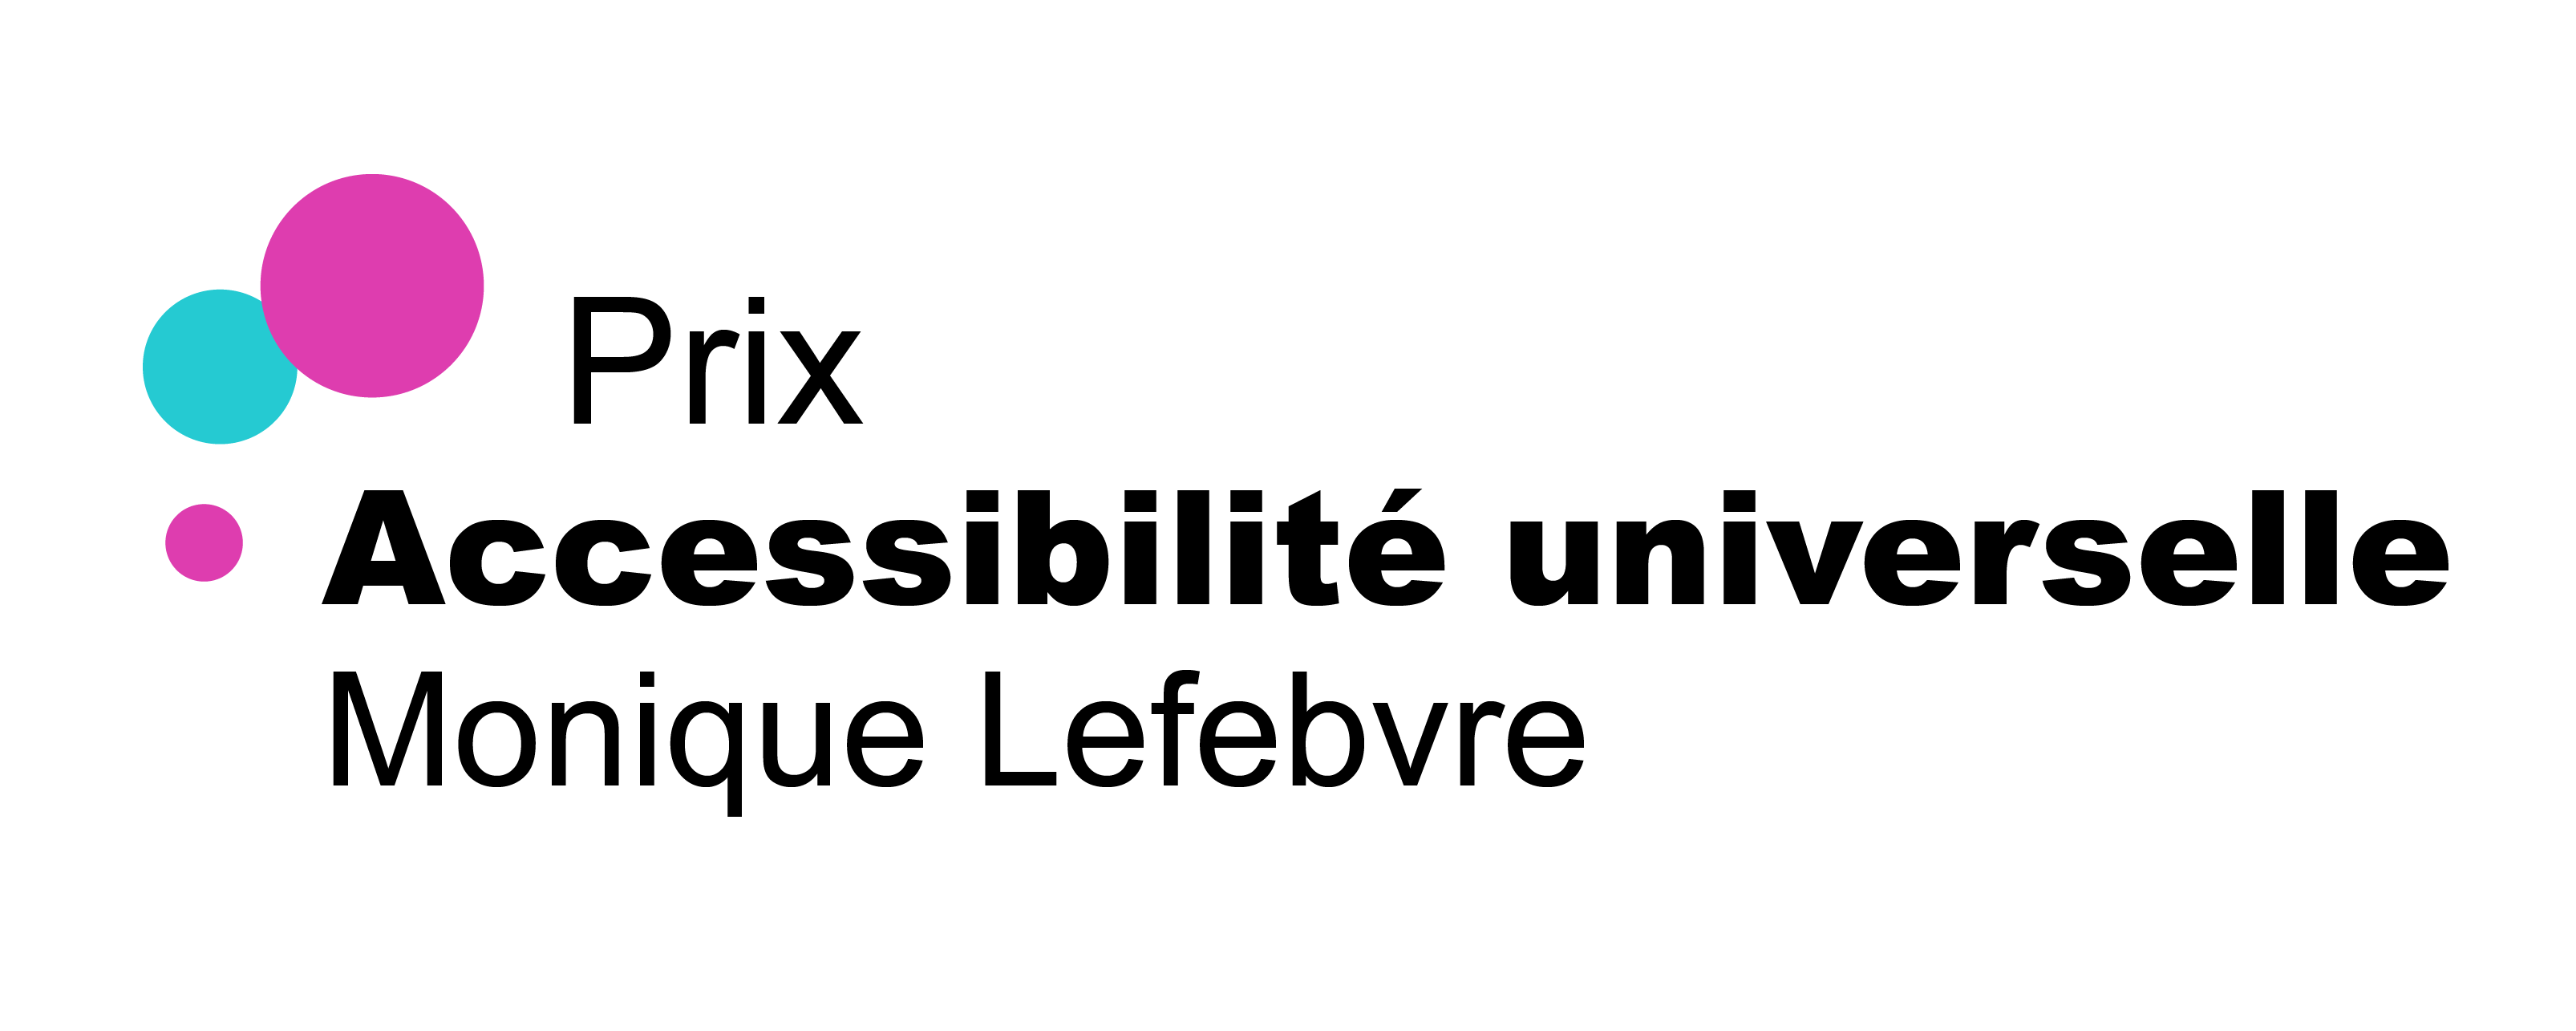 Logo du Prix Accessibilité universelle Monique Lefebvre